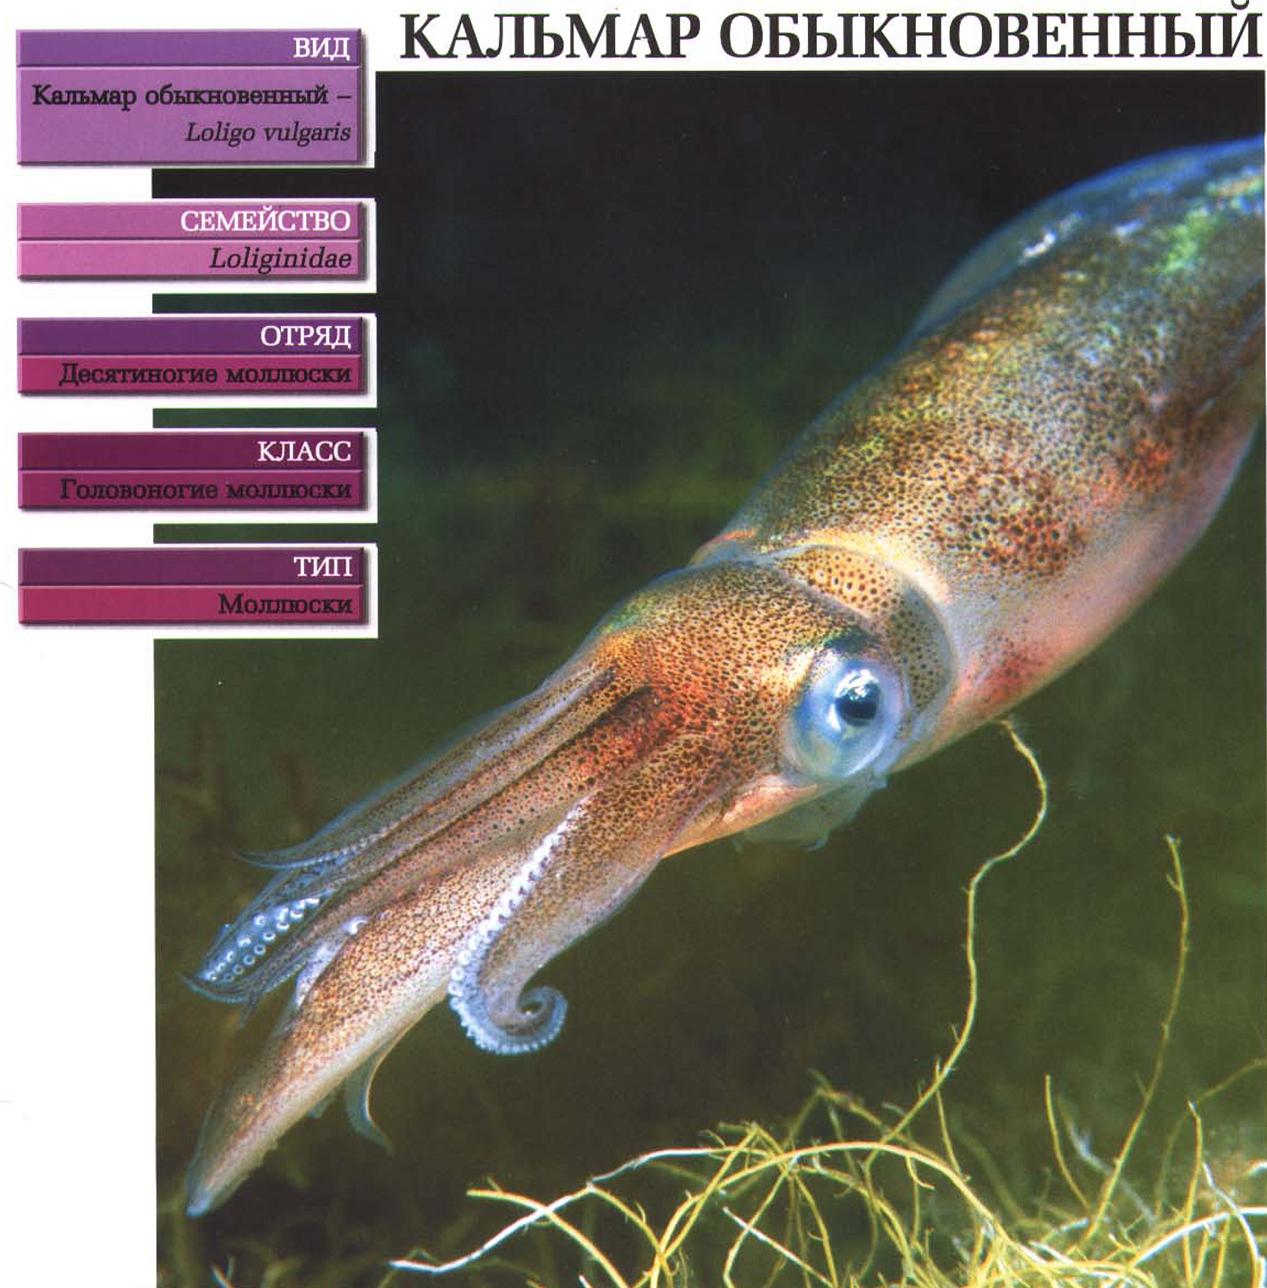 Систематика (научная классификация) обыкновенного кальмара. Loligo vulgaris.